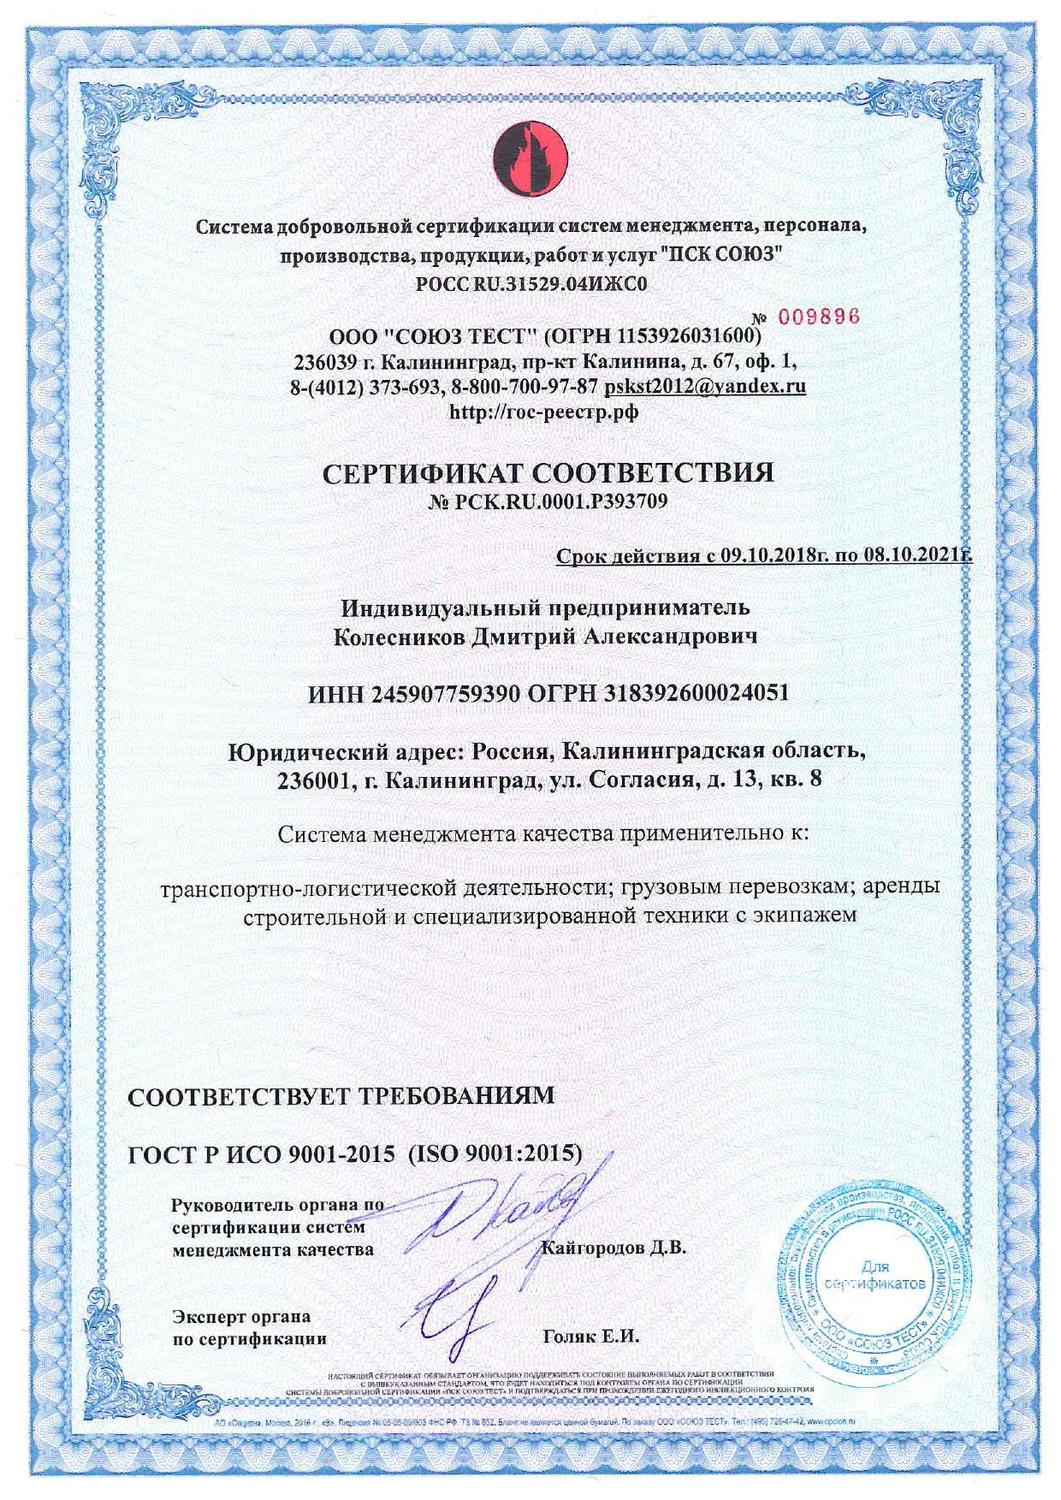 Сертификат соответствия на транспортно-логистическую деятельность, грузовые перевозки и аренду спецтехники